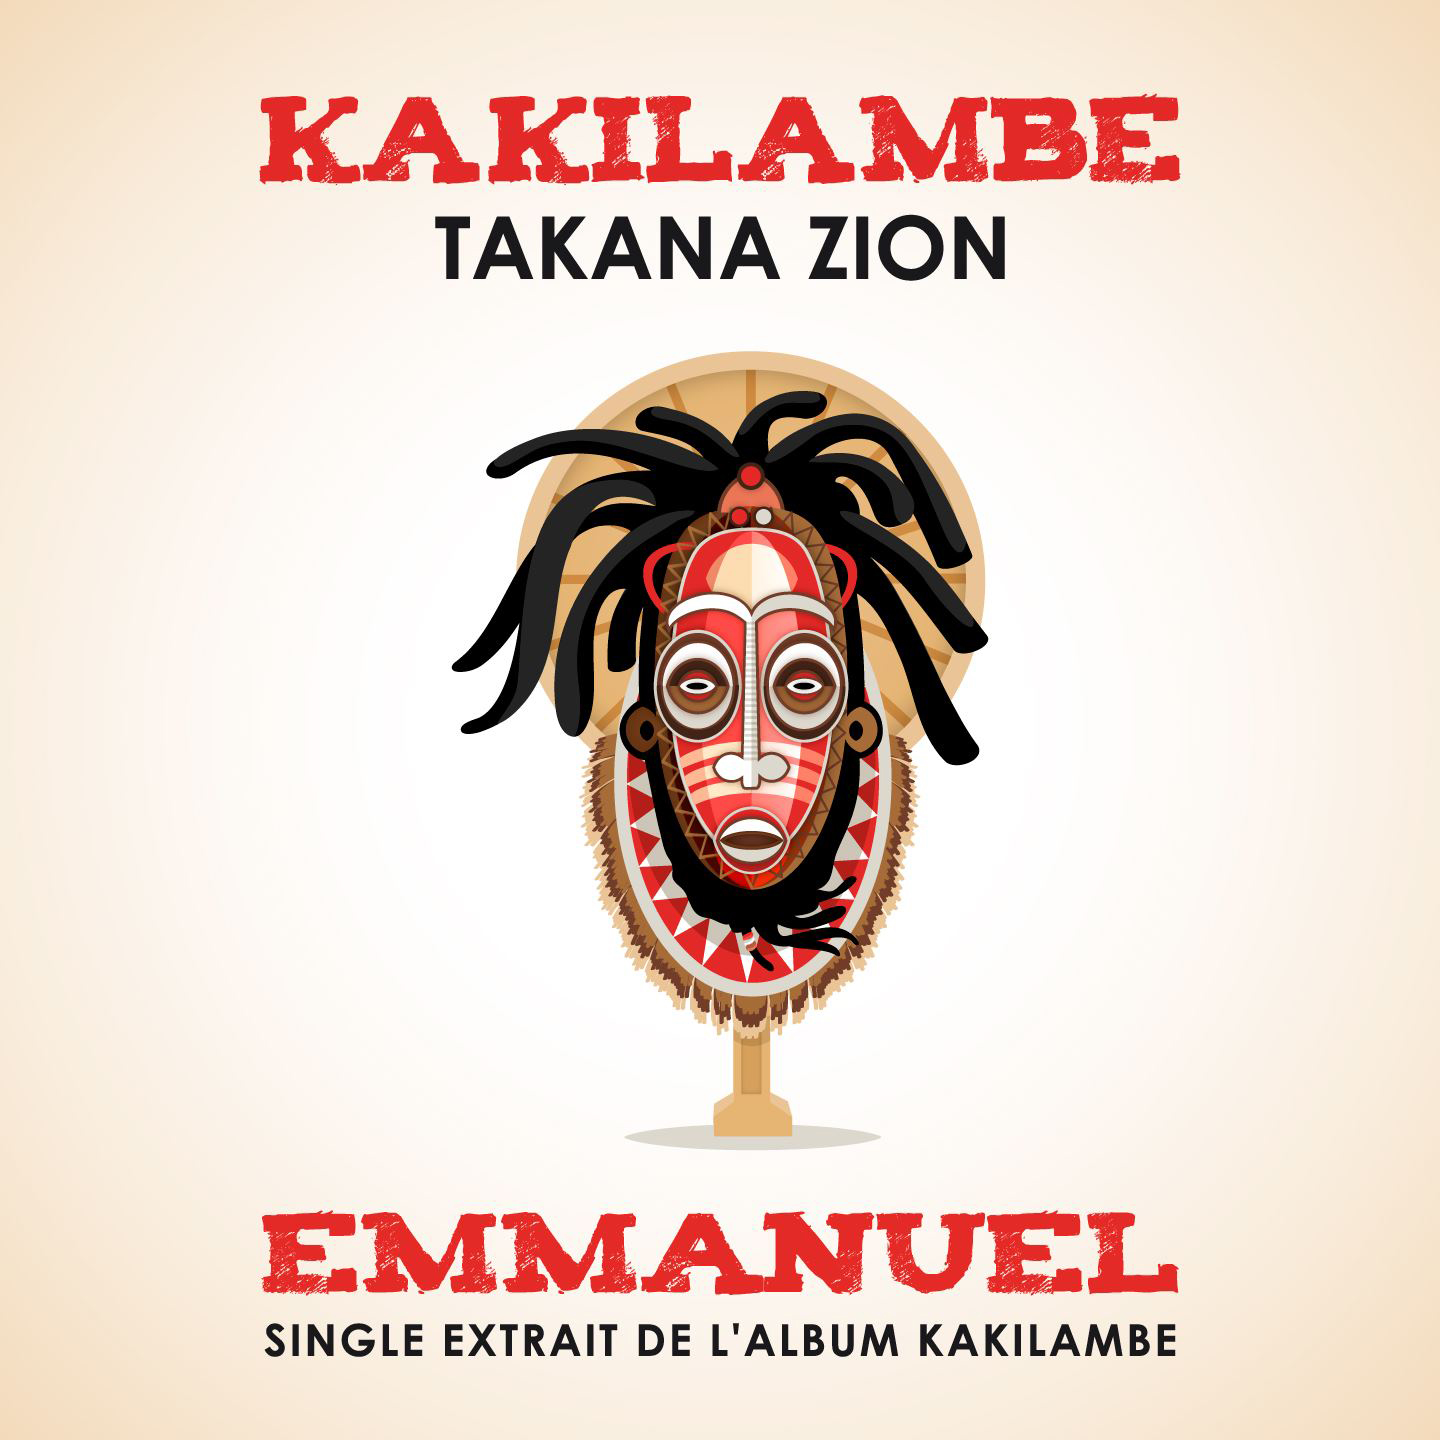 Cover du single de Takana Zion - Emmanuel. Réalisé par Loseou